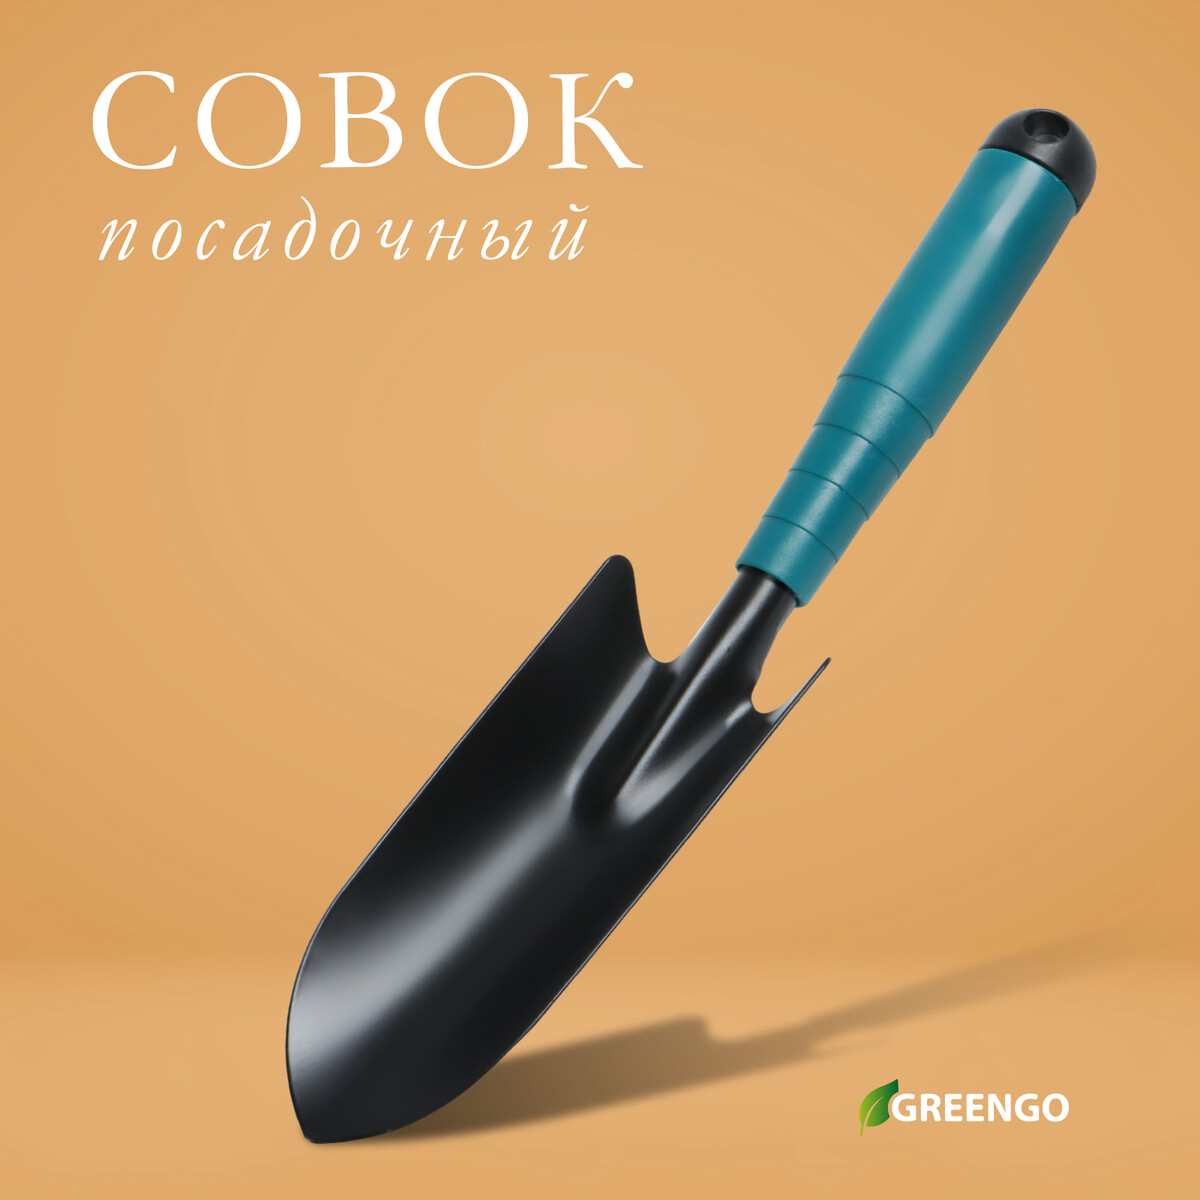 Совок посадочный greengo, длина 30 см, ширина 5,5 см, пластиковая ручка мотыжка комбинированная длина 29 см 3 зубца пластиковая ручка зеленая